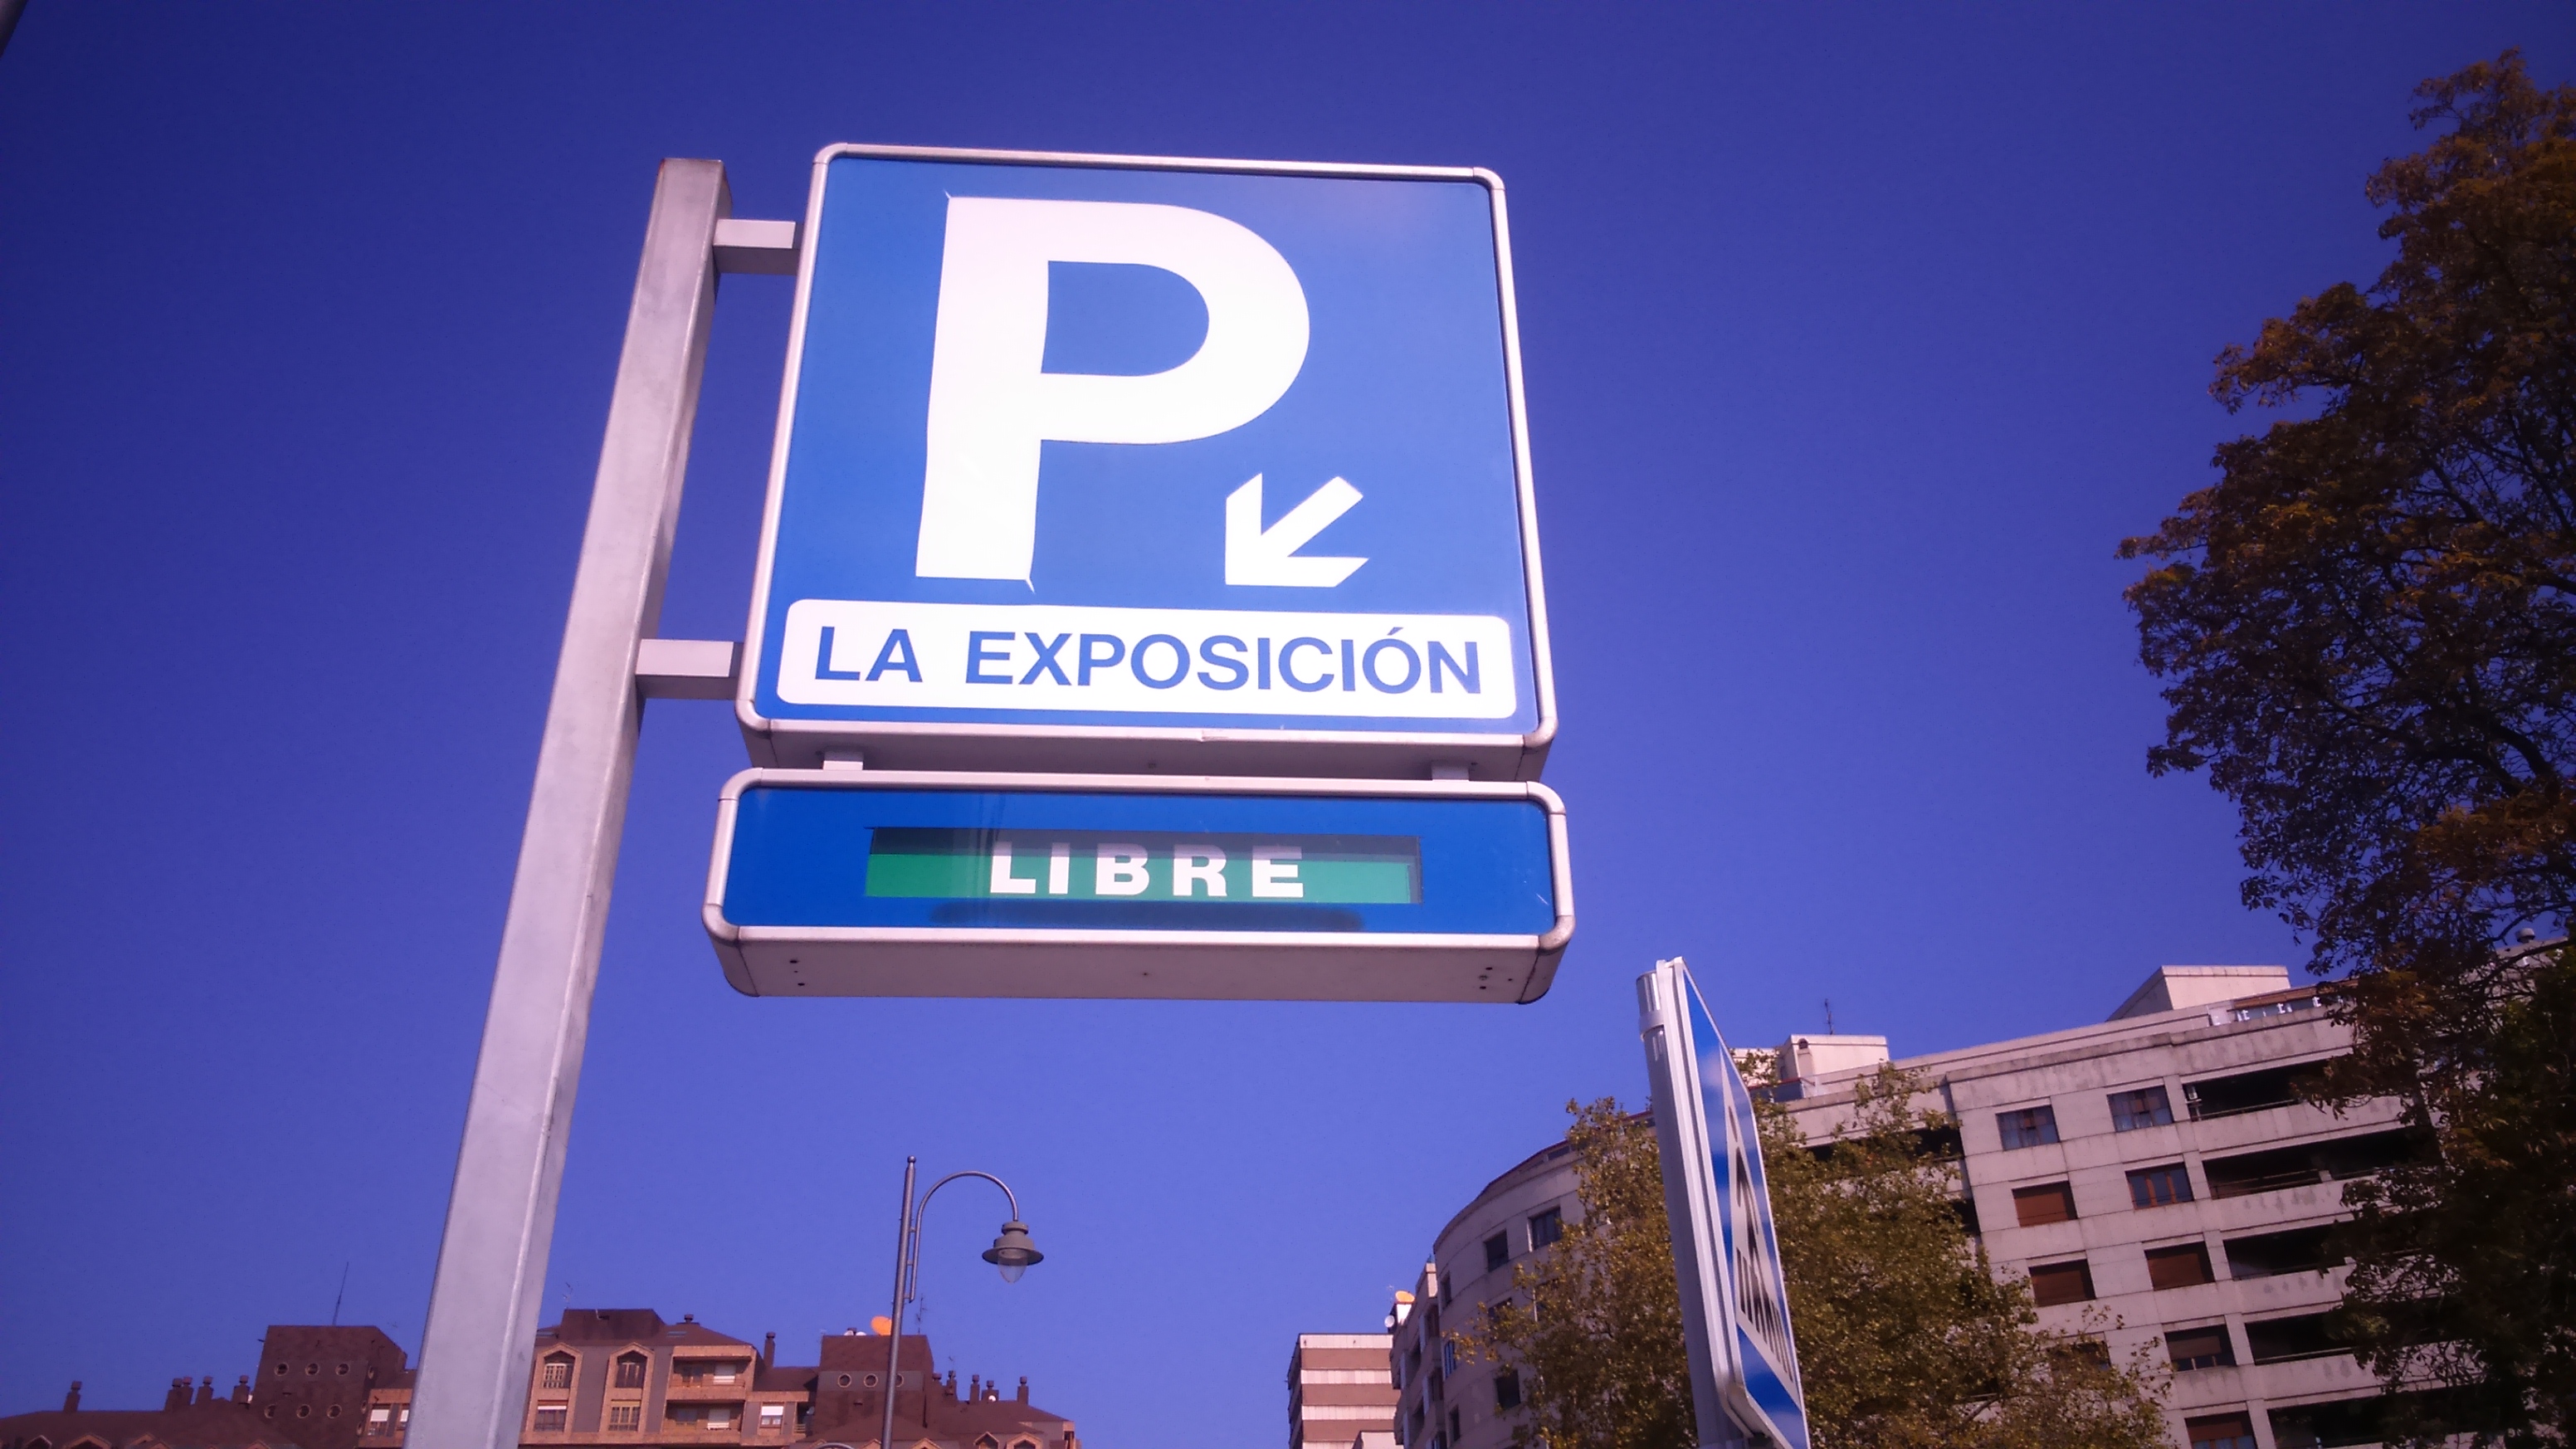 El Ayuntamiento mantendrá en 2020 las tarifas de los aparcamientos de El Atrio, La Exposición y plaza de España